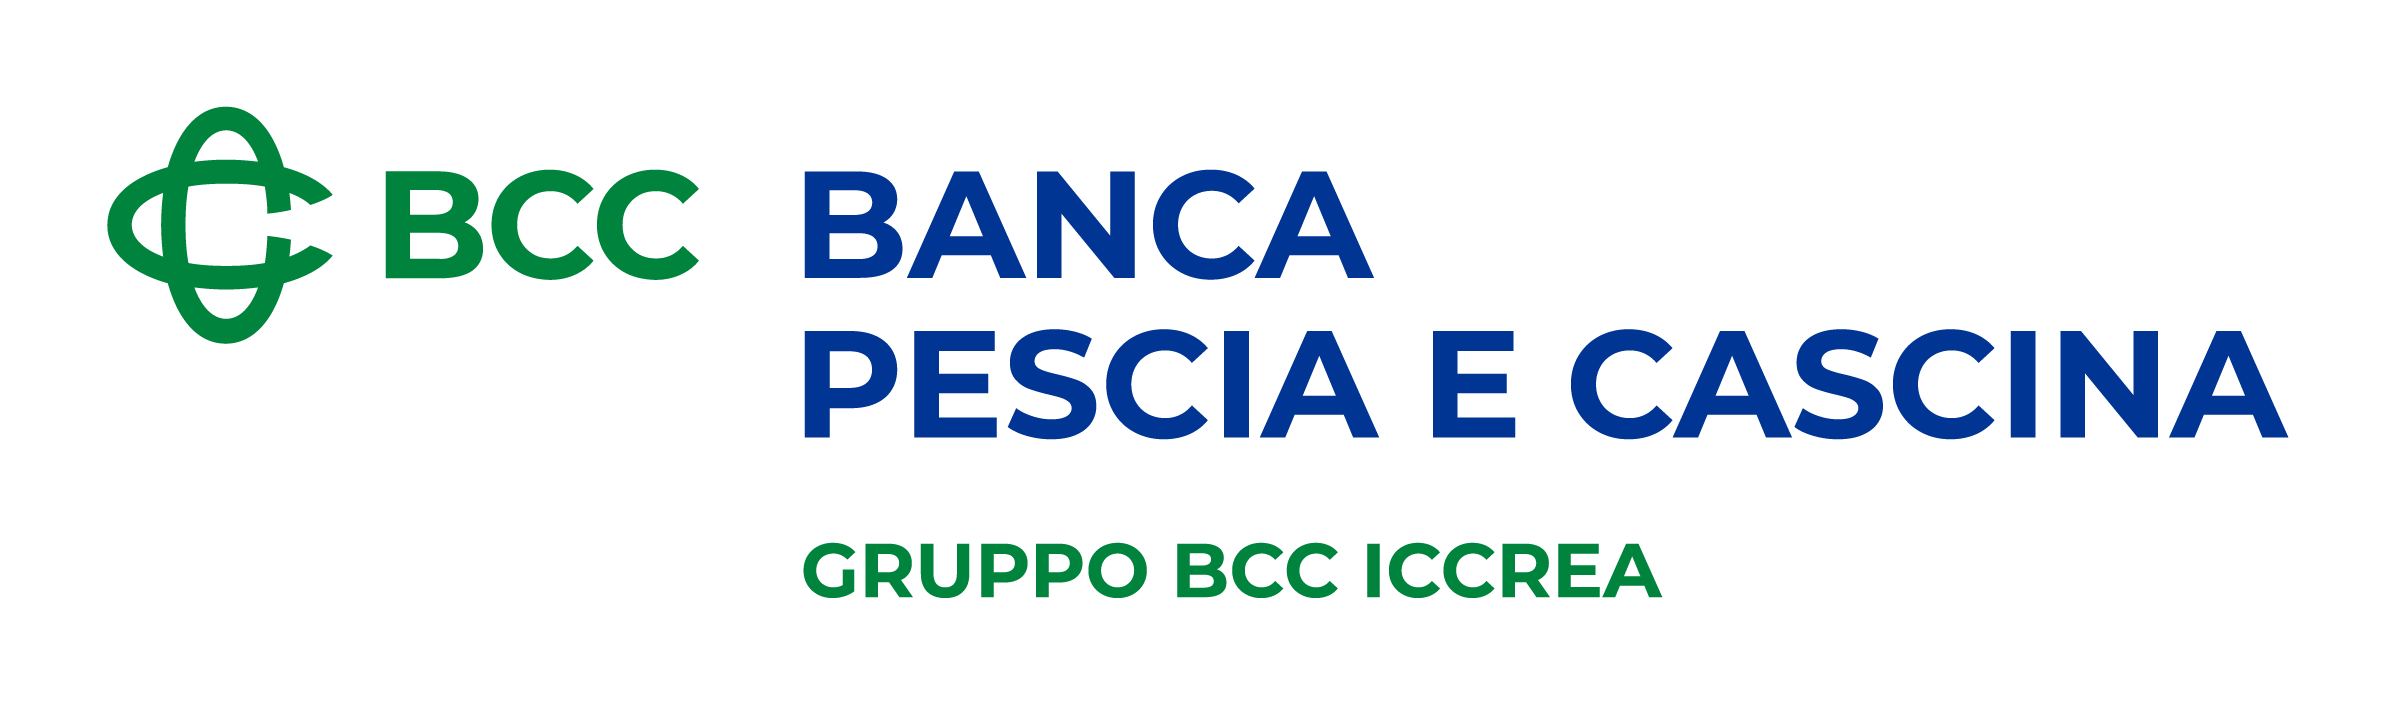 Logo Bcc Banca Pescia E Cascina 2r Spec1 Colore Rgb